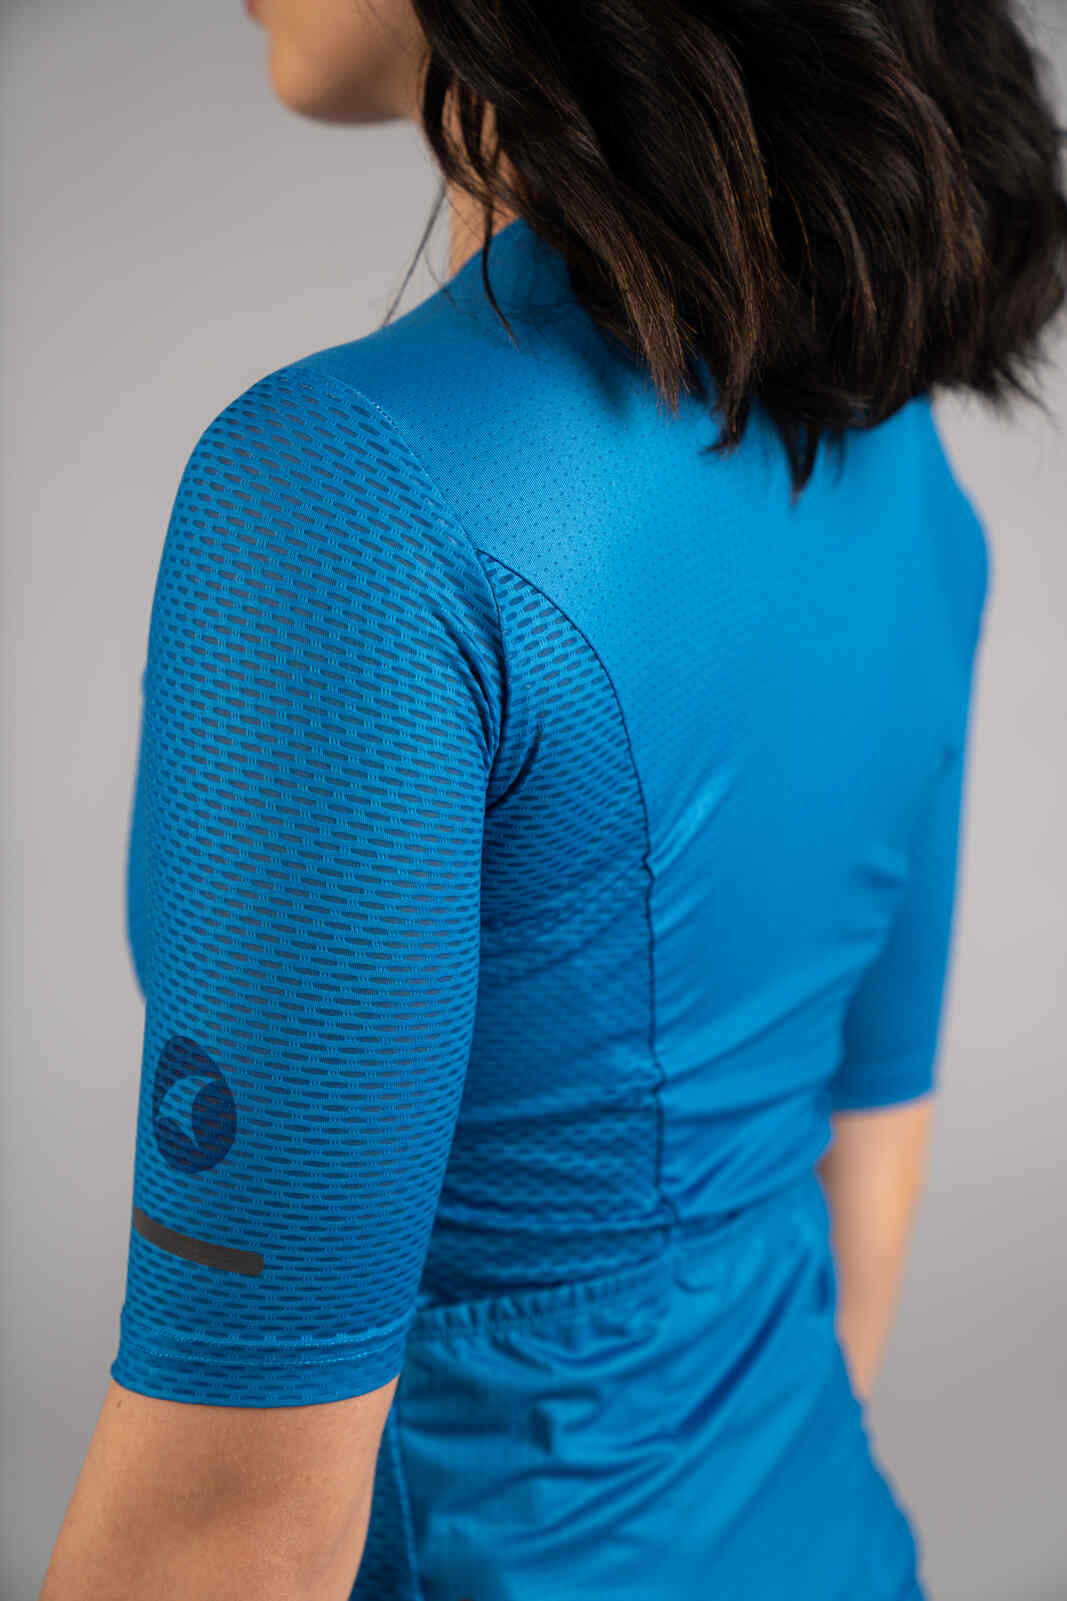 Women's Blue Mesh Cycling Jersey - Mesh Fabric Close-Up